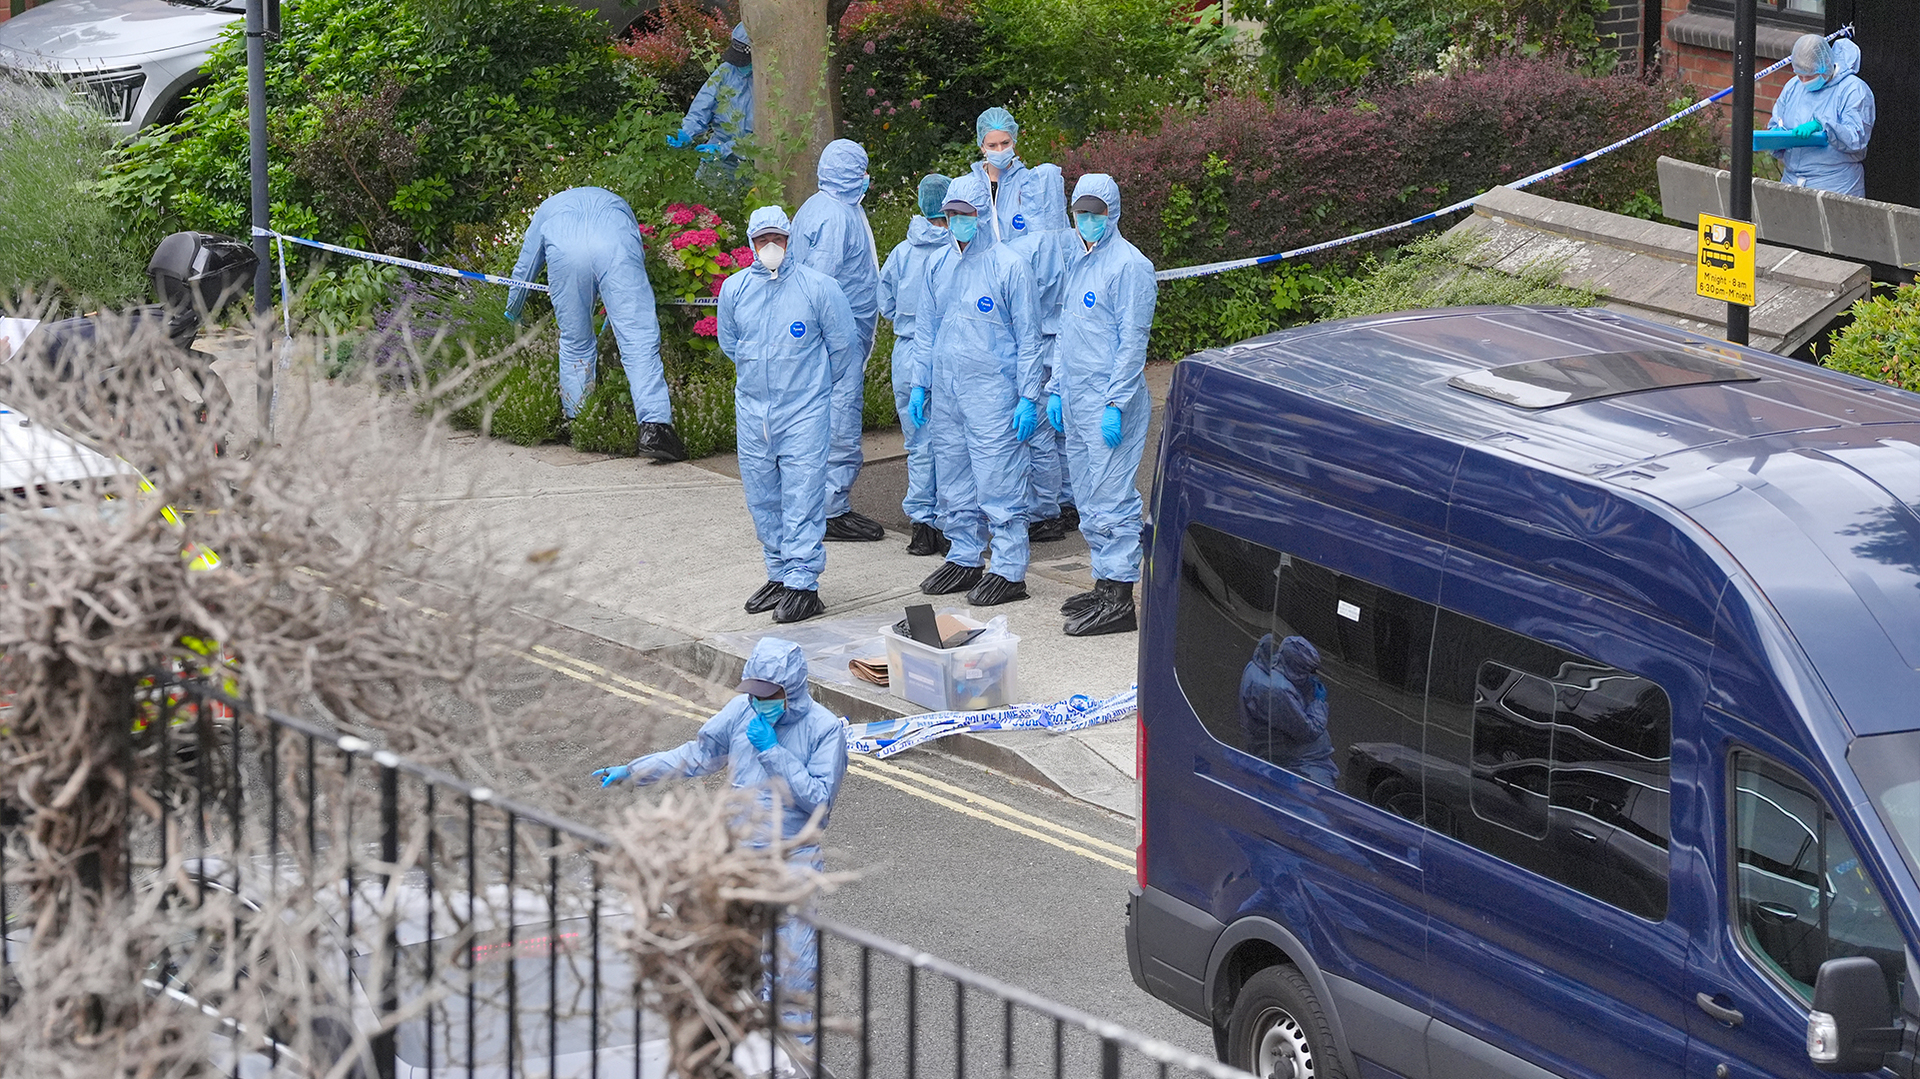 Restos mortais de dois homens são encontrados em malas em Londres